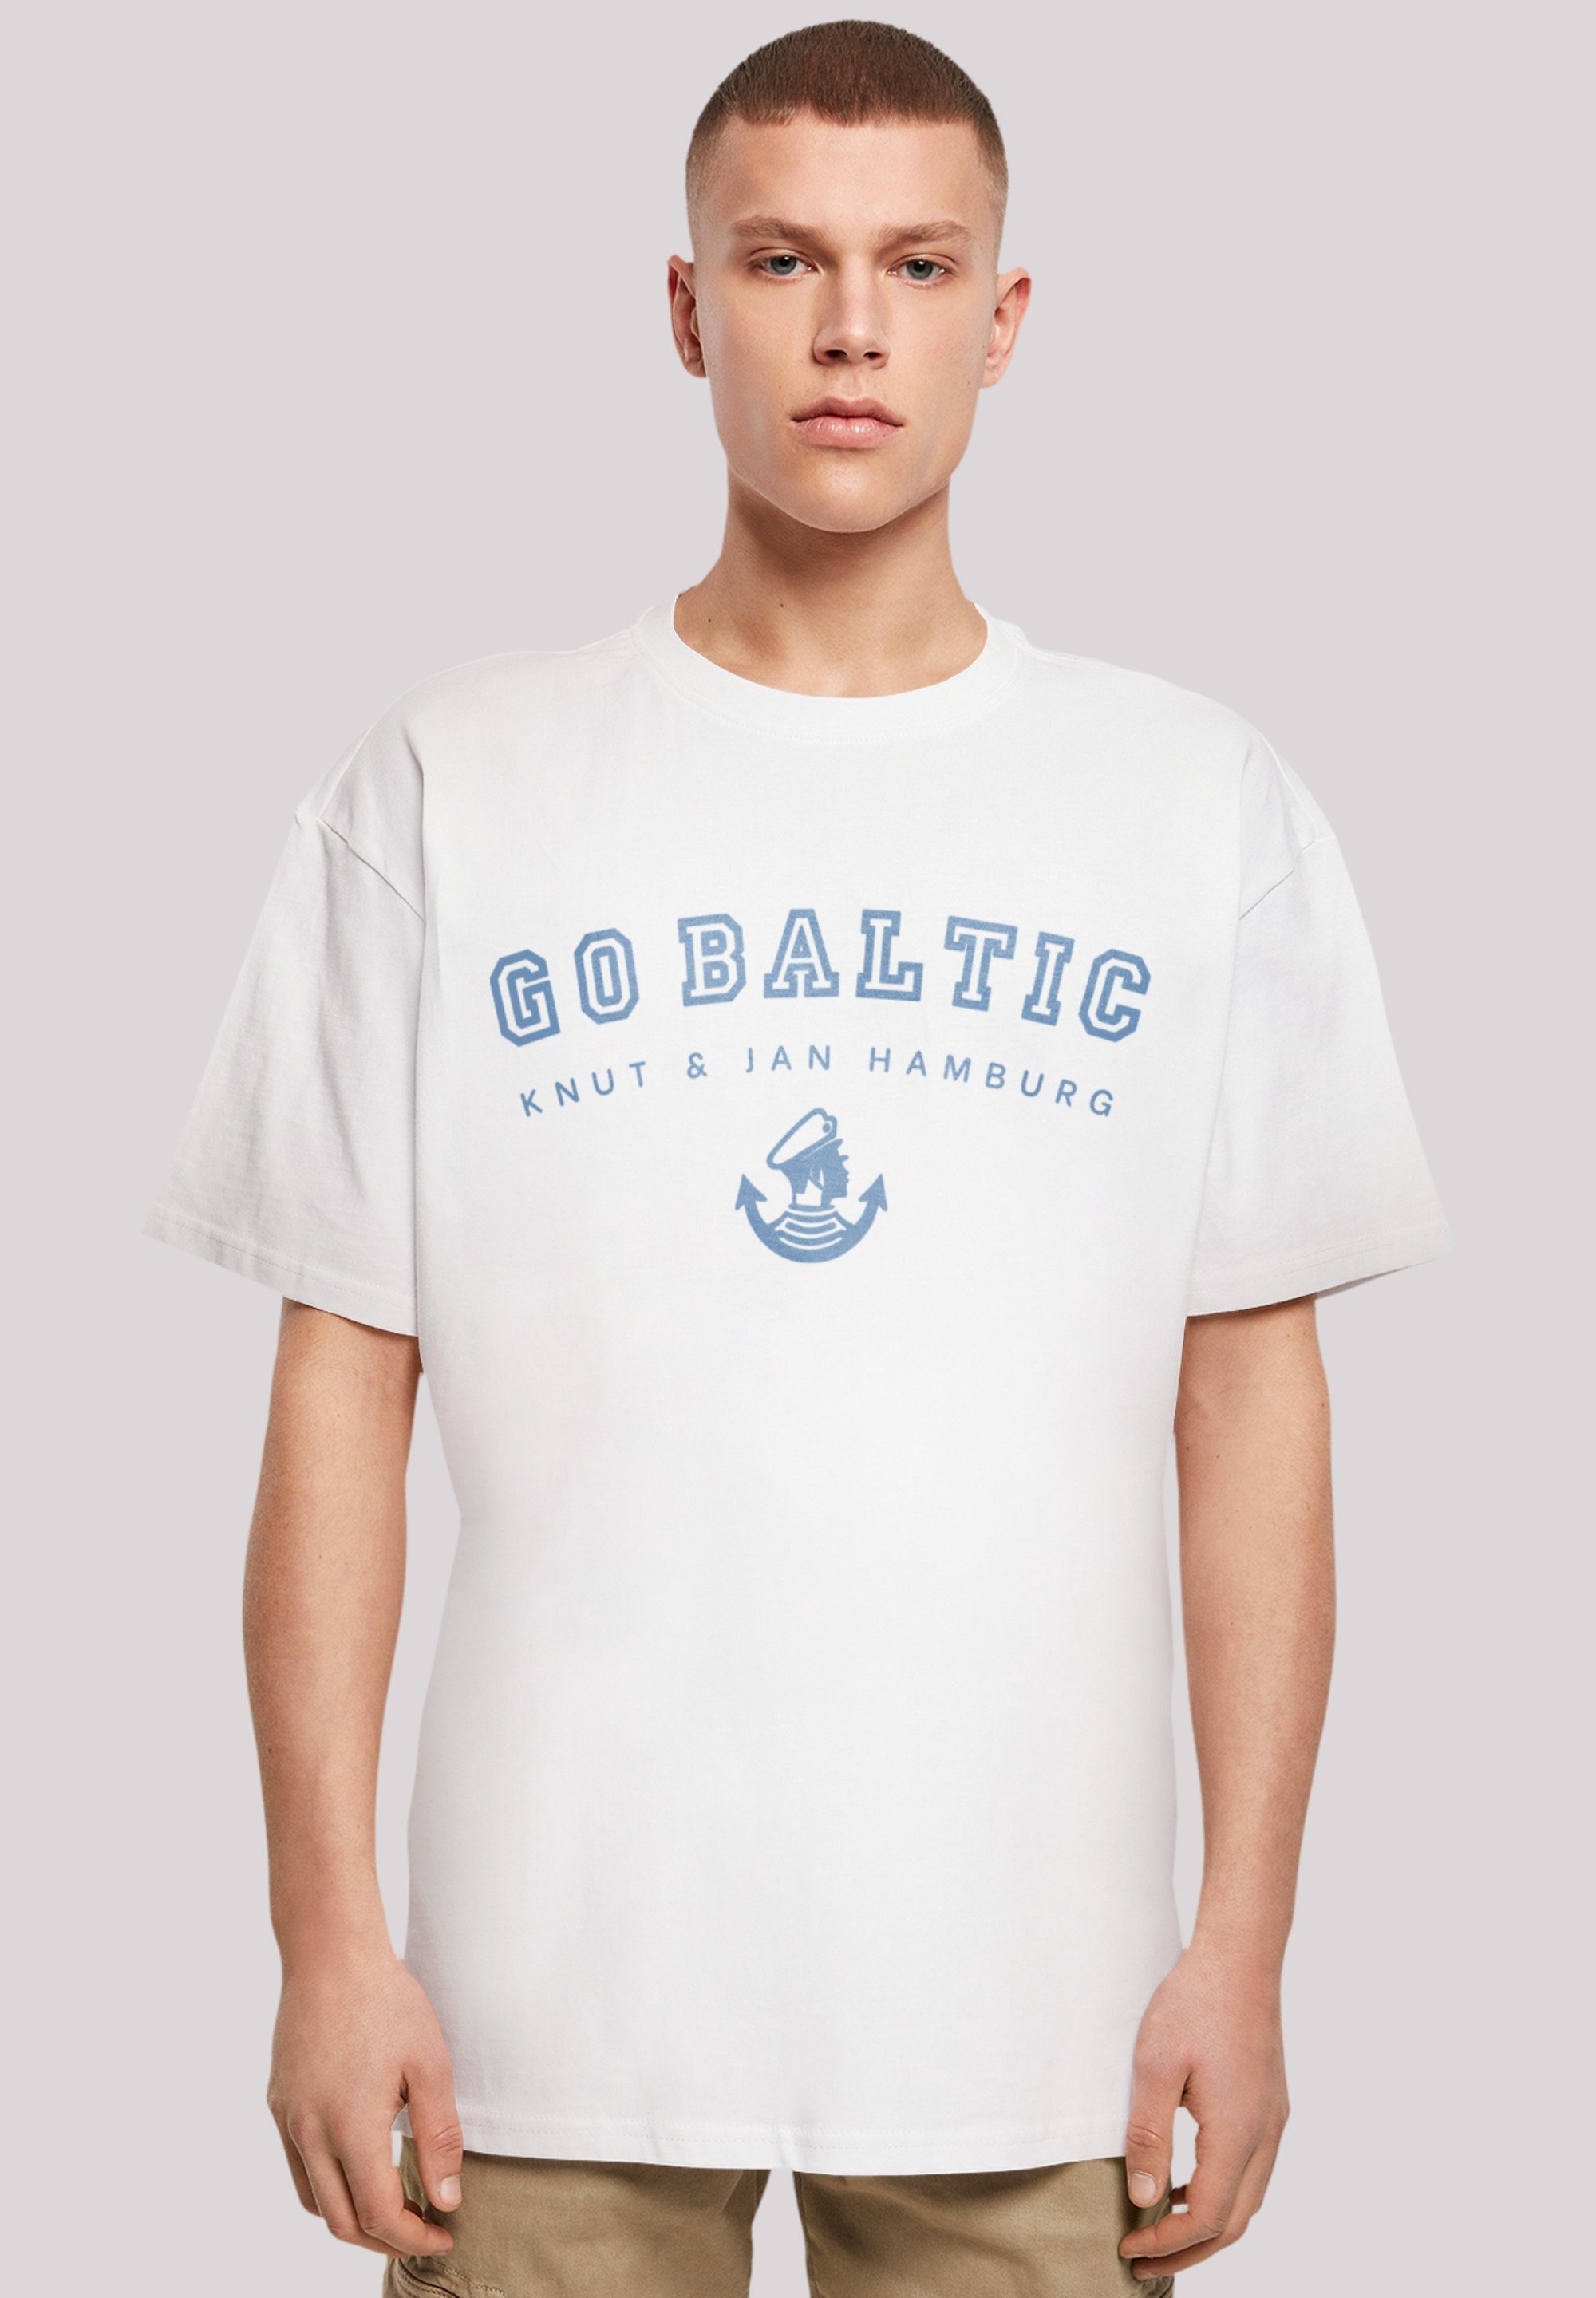 Ostsee weiß T-Shirt Go Jan F4NT4STIC Baltic & Print Hamburg Knut